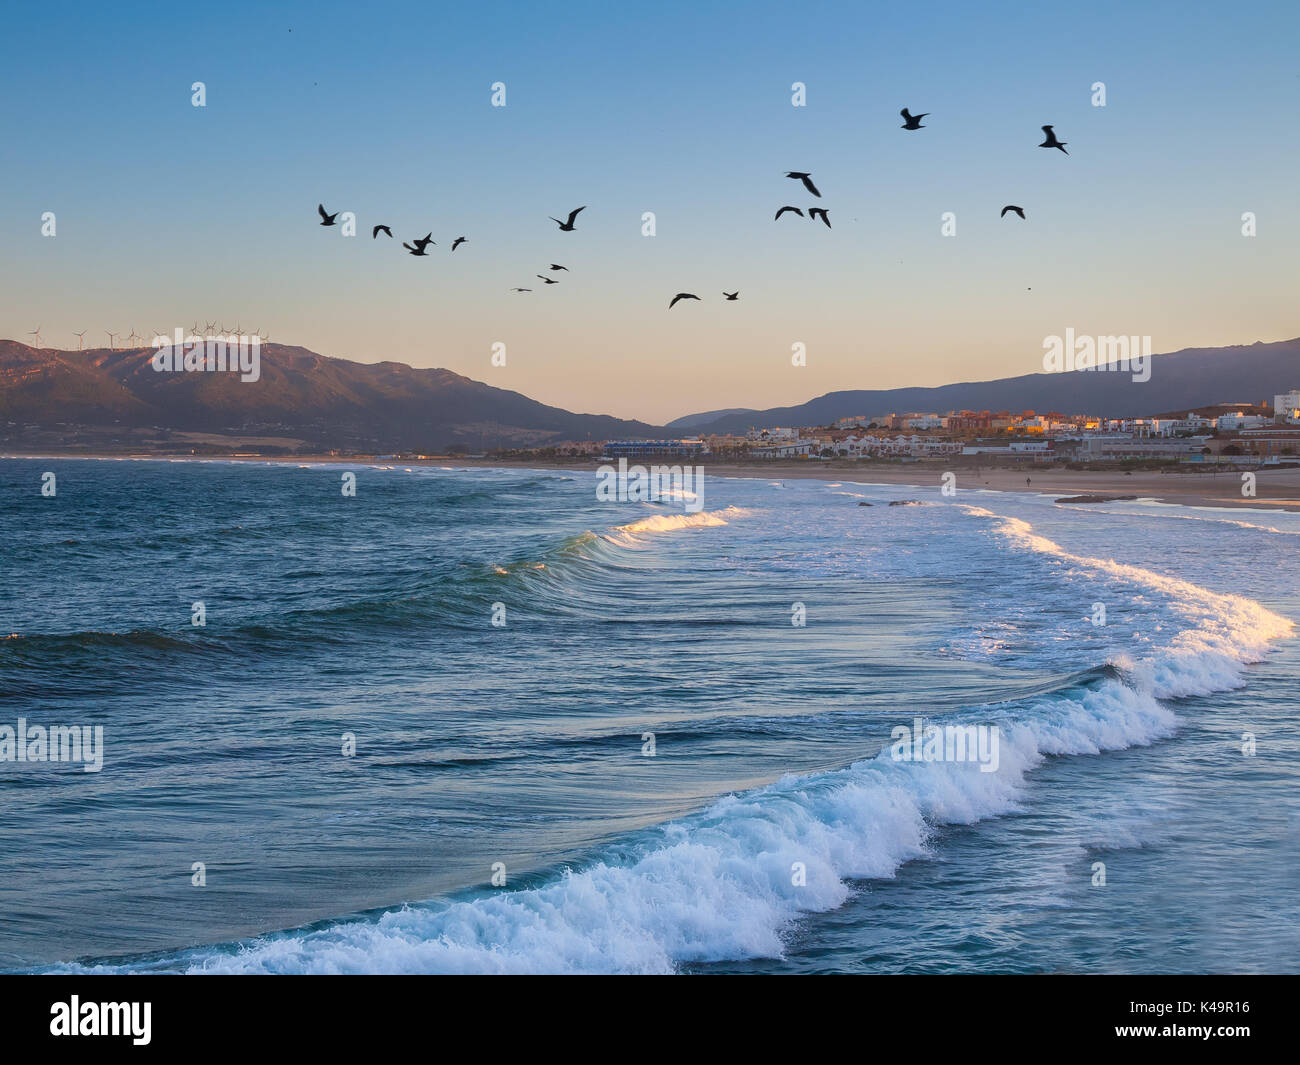 Morgendämmerung Am Strand Los Lances, Tarifa, Andalusien, Spanien, Europa. Tarifa ist die südlichste Stadt Europas UND EIN beliebtes Touristenziel Stockfoto